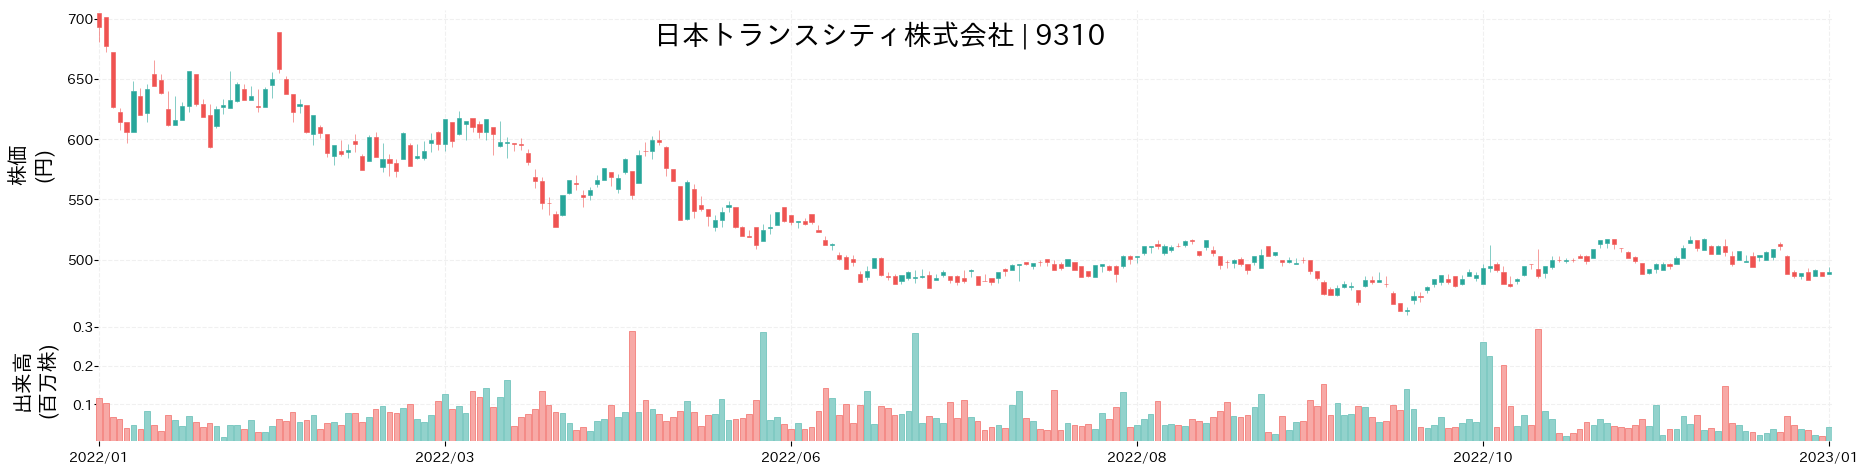 日本トランスシティの株価推移(2022)